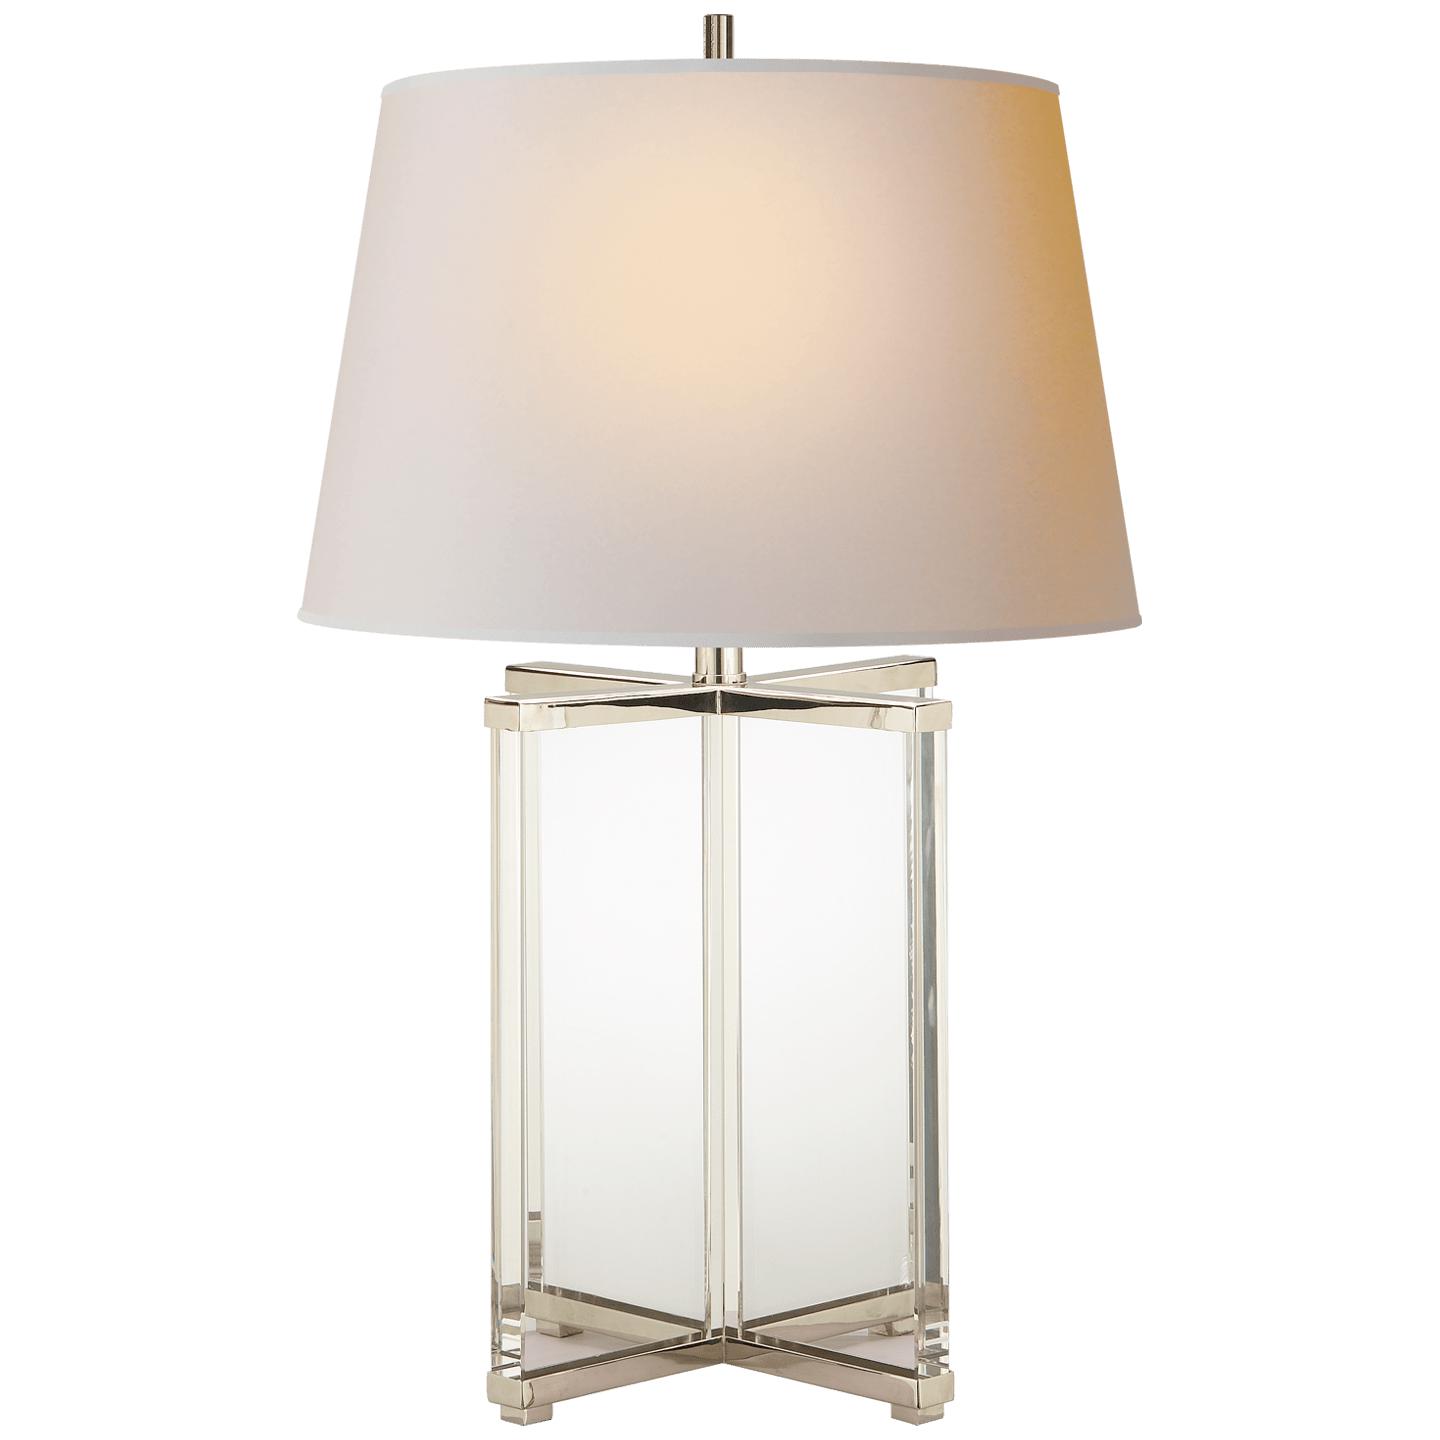 Купить Настольная лампа Cameron Table Lamp в интернет-магазине roooms.ru